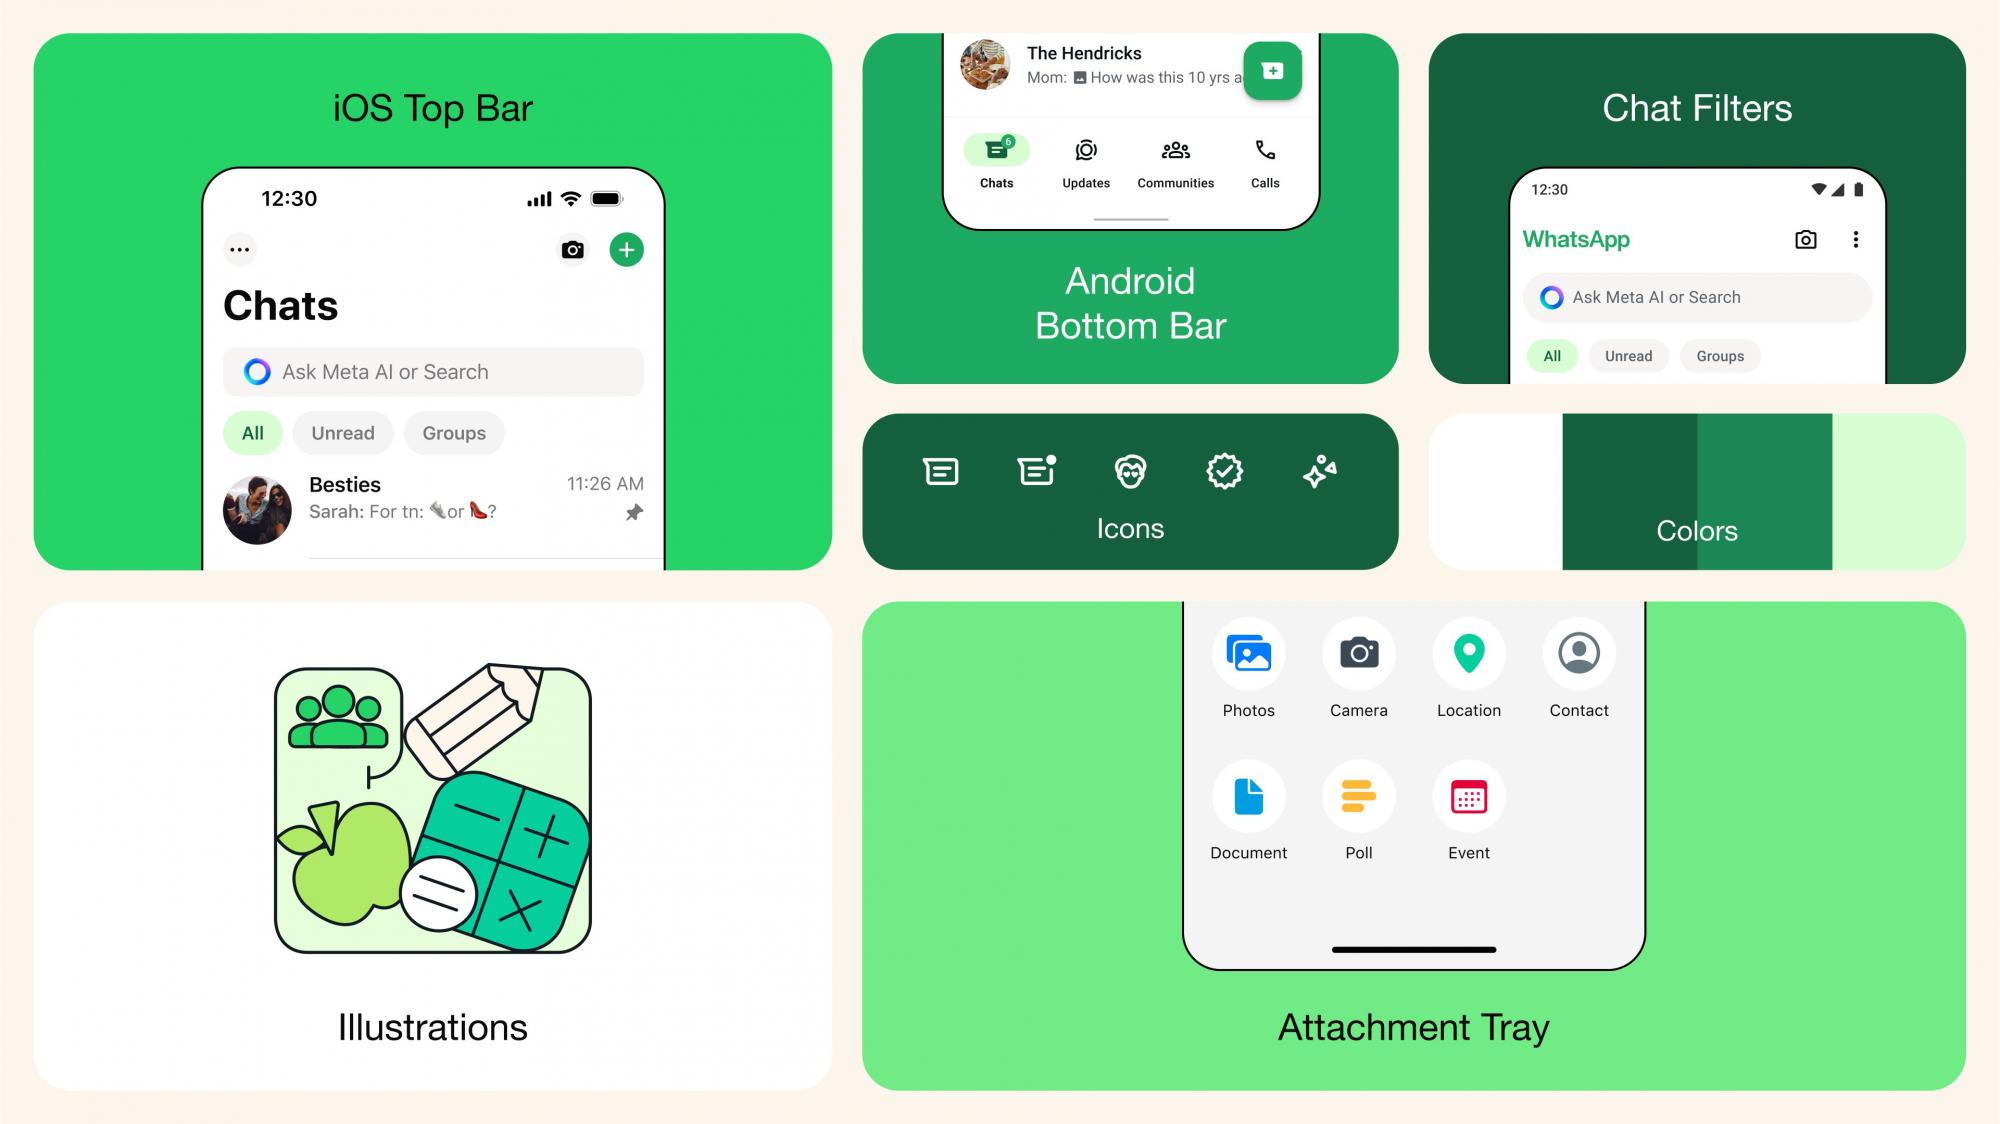 Команда WhatsApp показала обновленный дизайн мессенджера для Android и iOS